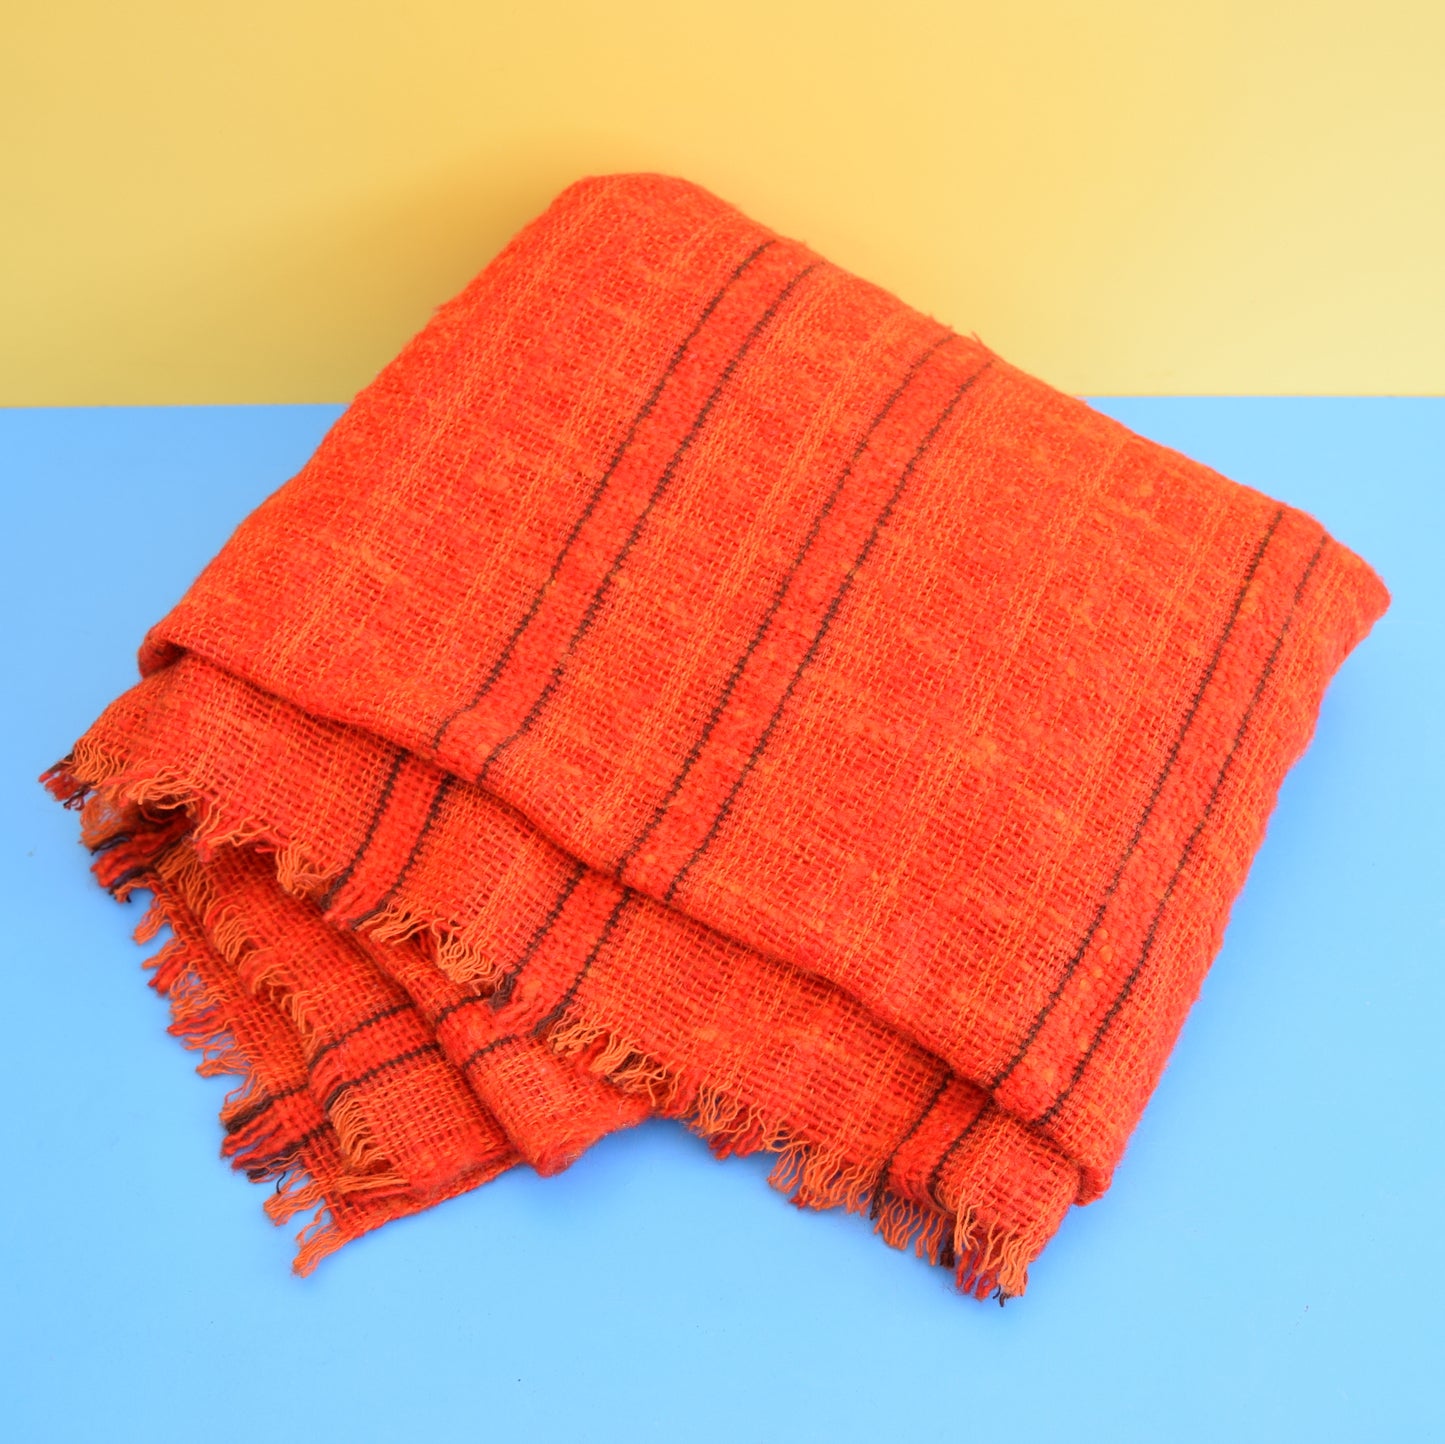 Vintage 1970s Loose Weave Blanket / Throw - Orange